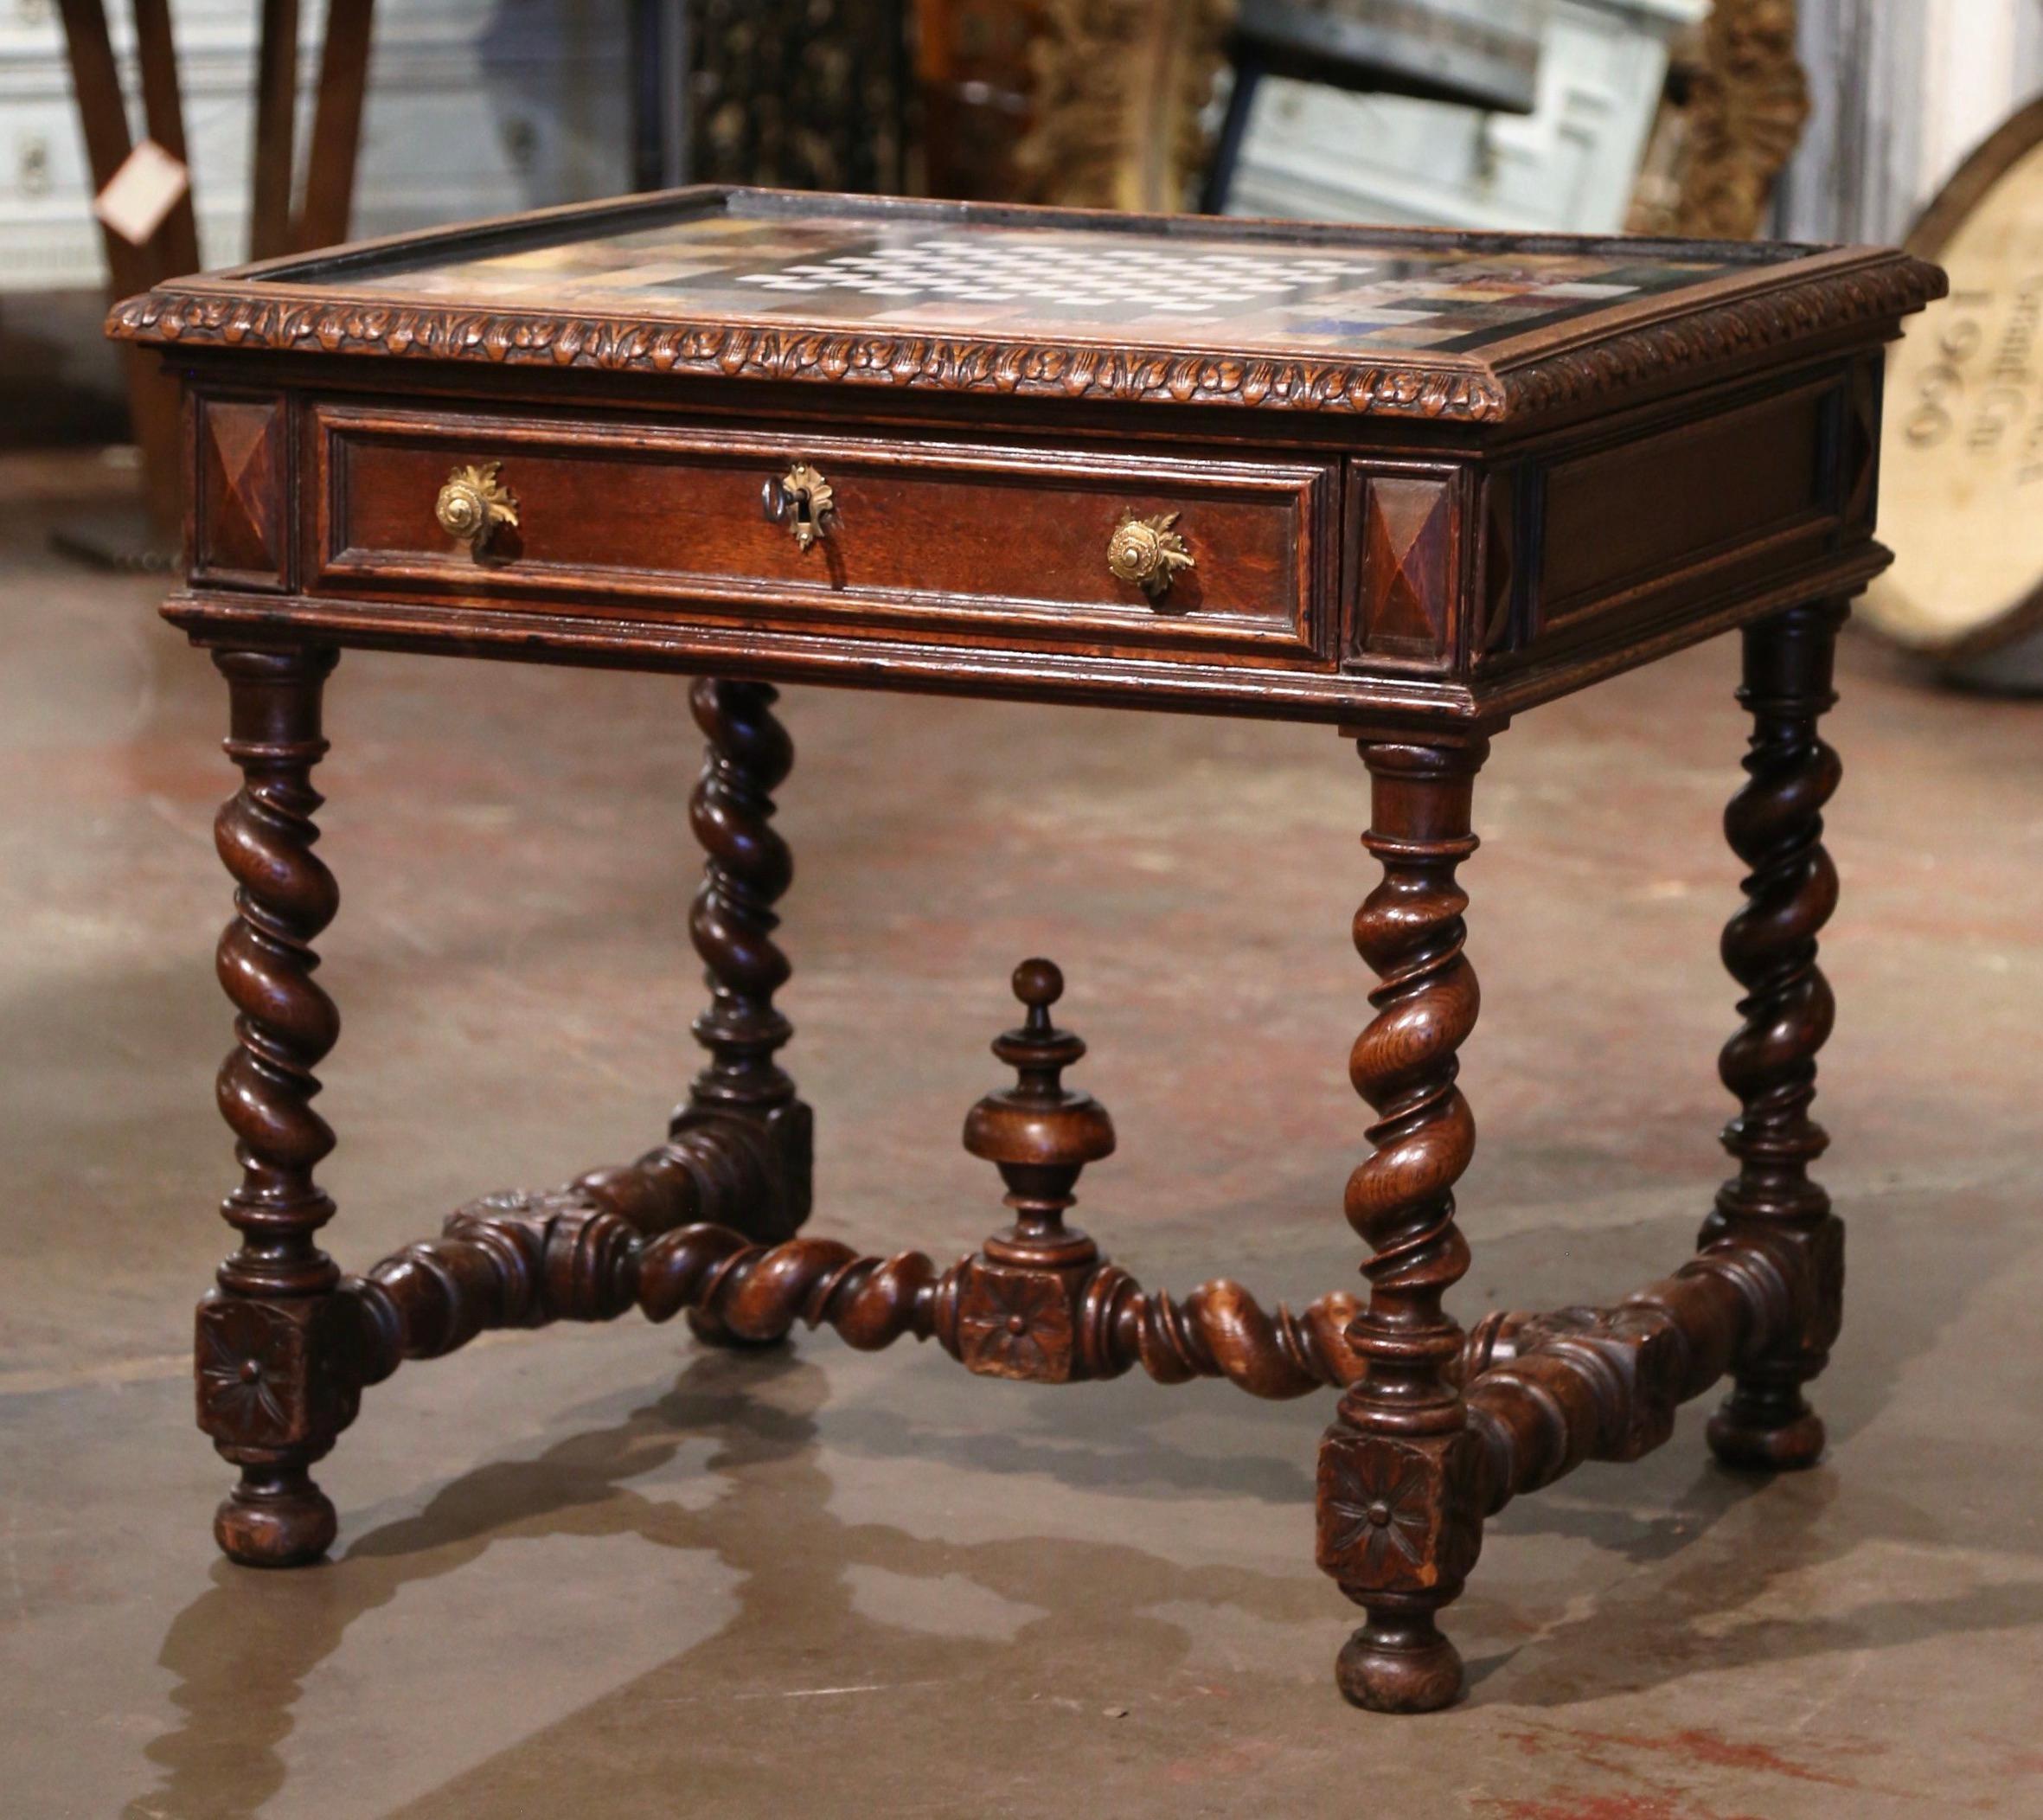 Décorez un bureau ou une salle de jeu avec cette élégante table à cartes ancienne. Fabriquée dans le sud de la France vers 1780, la table repose sur d'épais pieds torsadés en orge décorés de médaillons en forme de diamant à l'épaulement, et reliés à